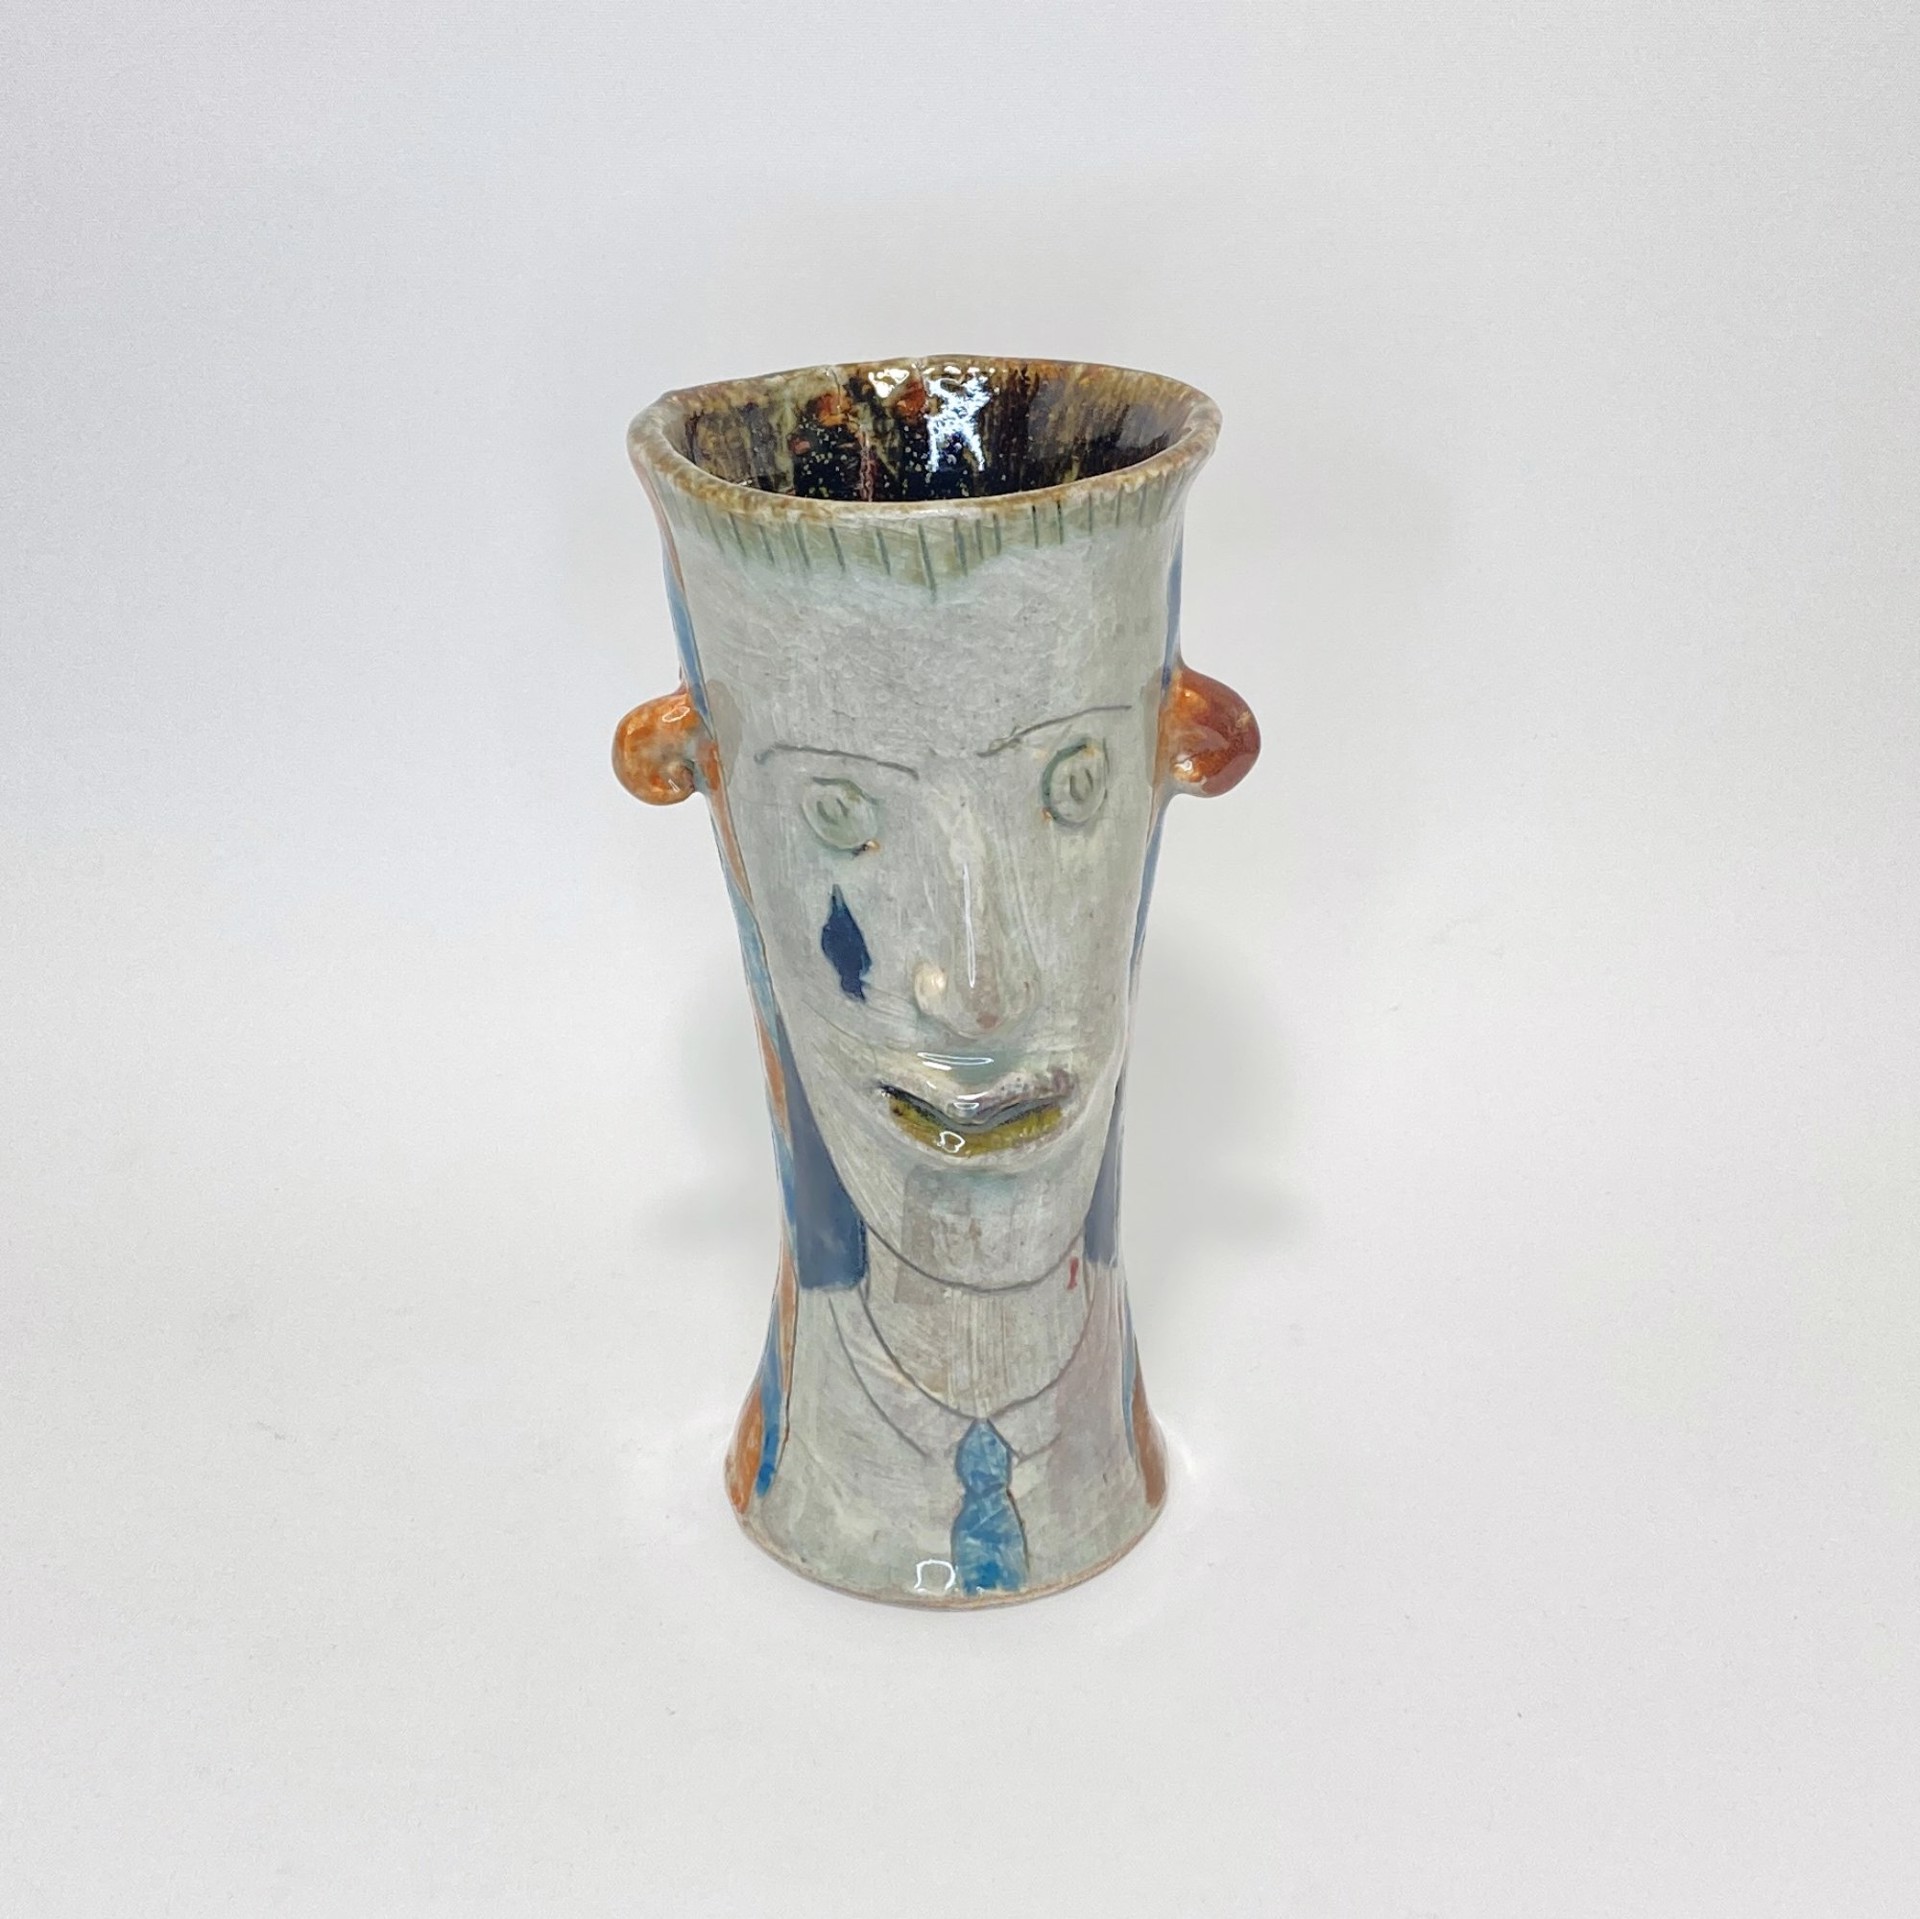 Spade Cup by Julius Forzano